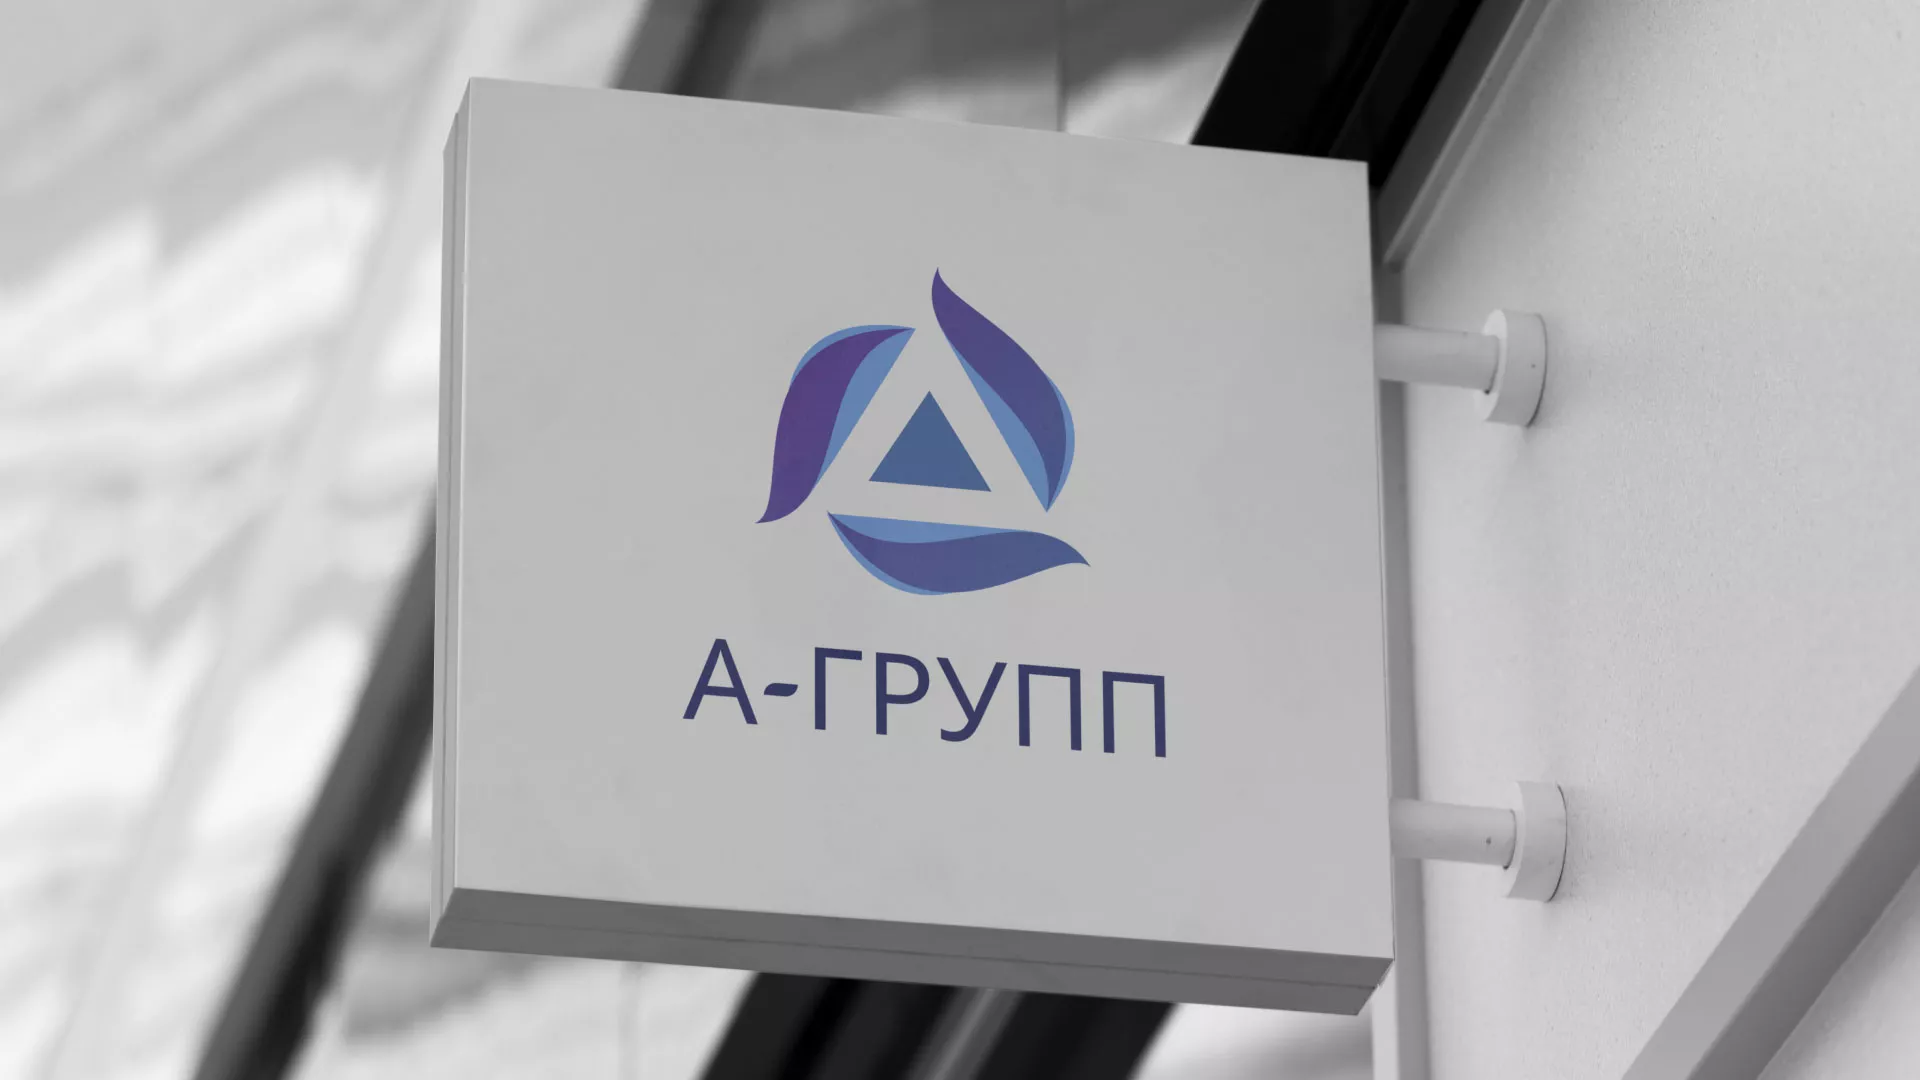 Создание логотипа компании «А-ГРУПП» в Таре